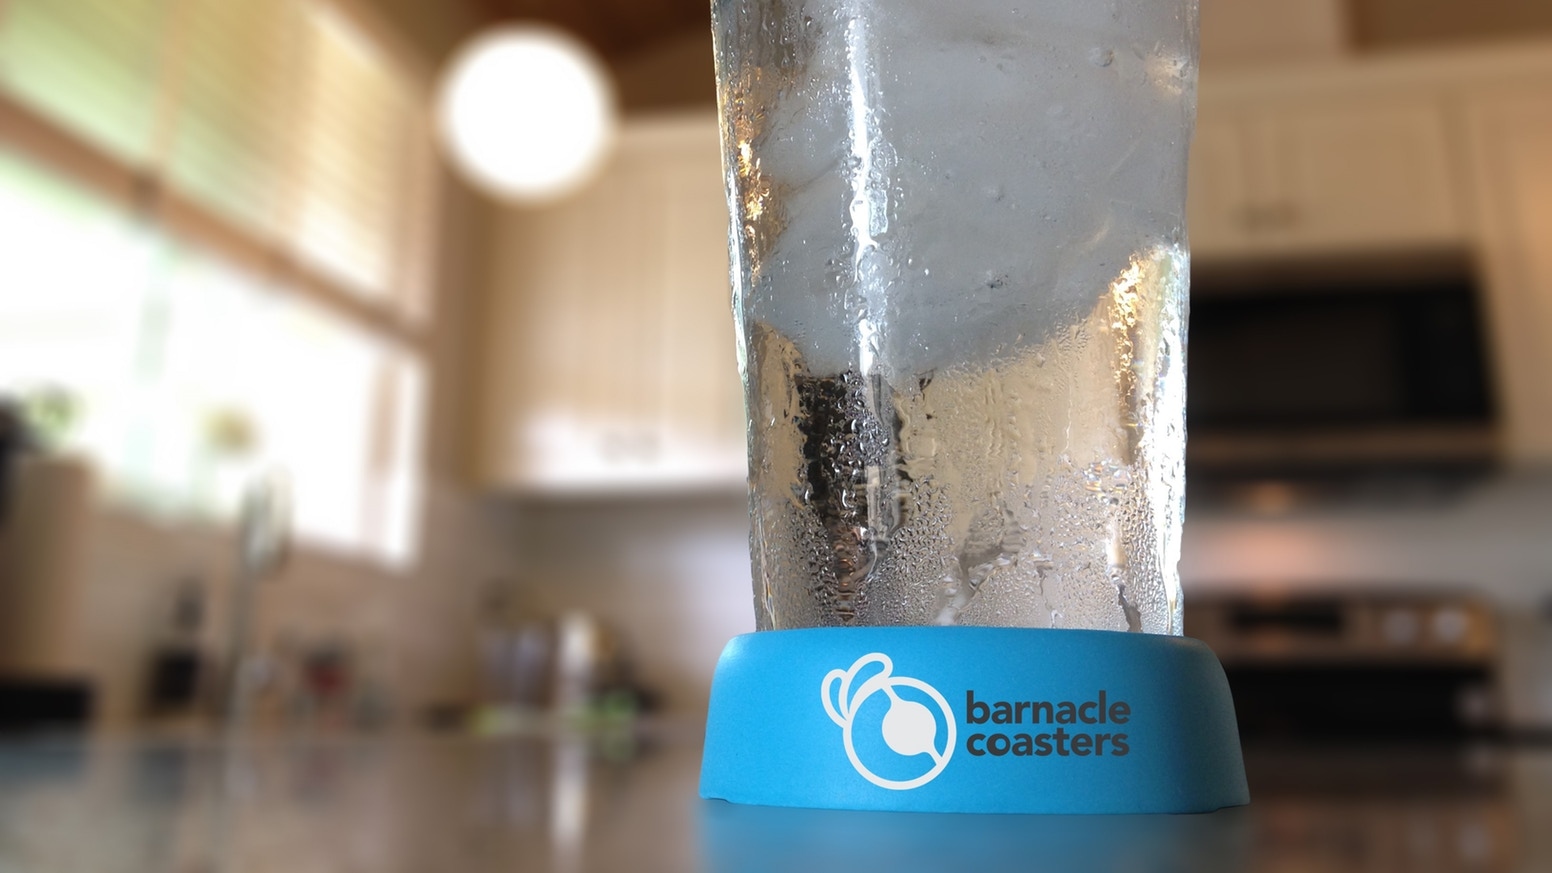 グラスの水滴を回収して絶対に逃さないコースター Barnacle Coasters ガジェットの購入なら海外通販のrakunew ラクニュー